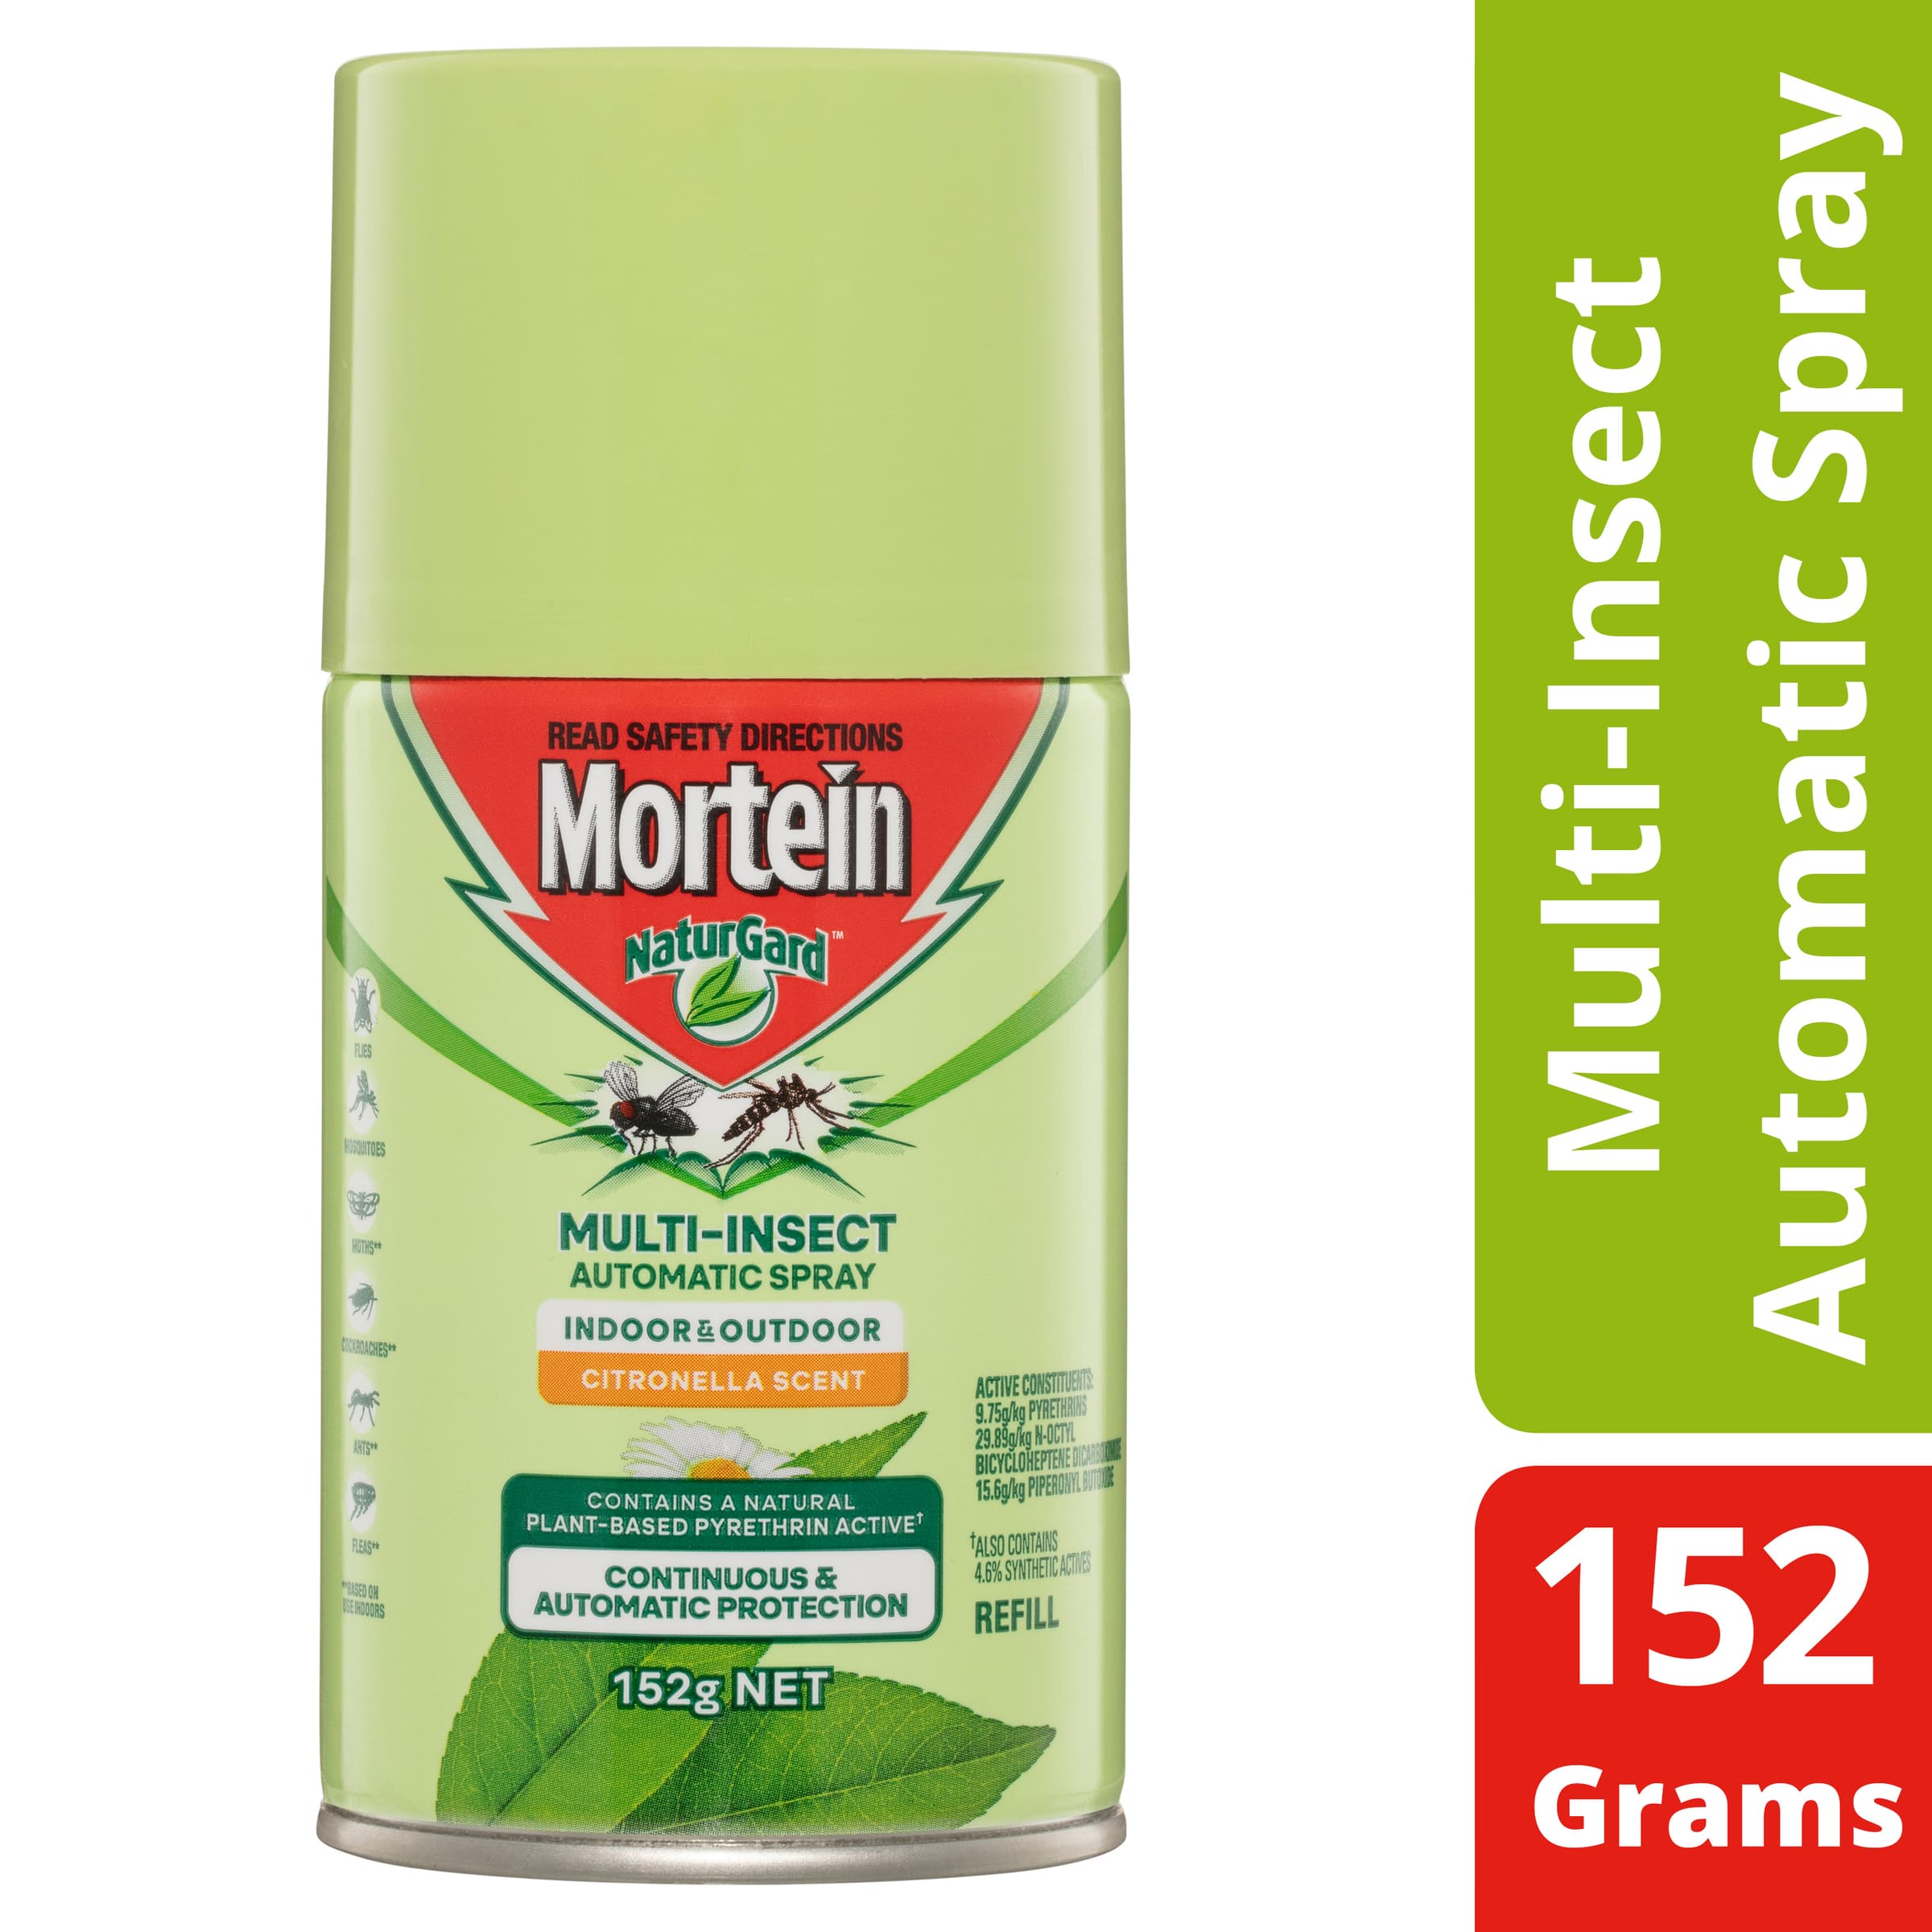 Mortein NaturGard Multi-Insect Automatic Refill Citronella 152g